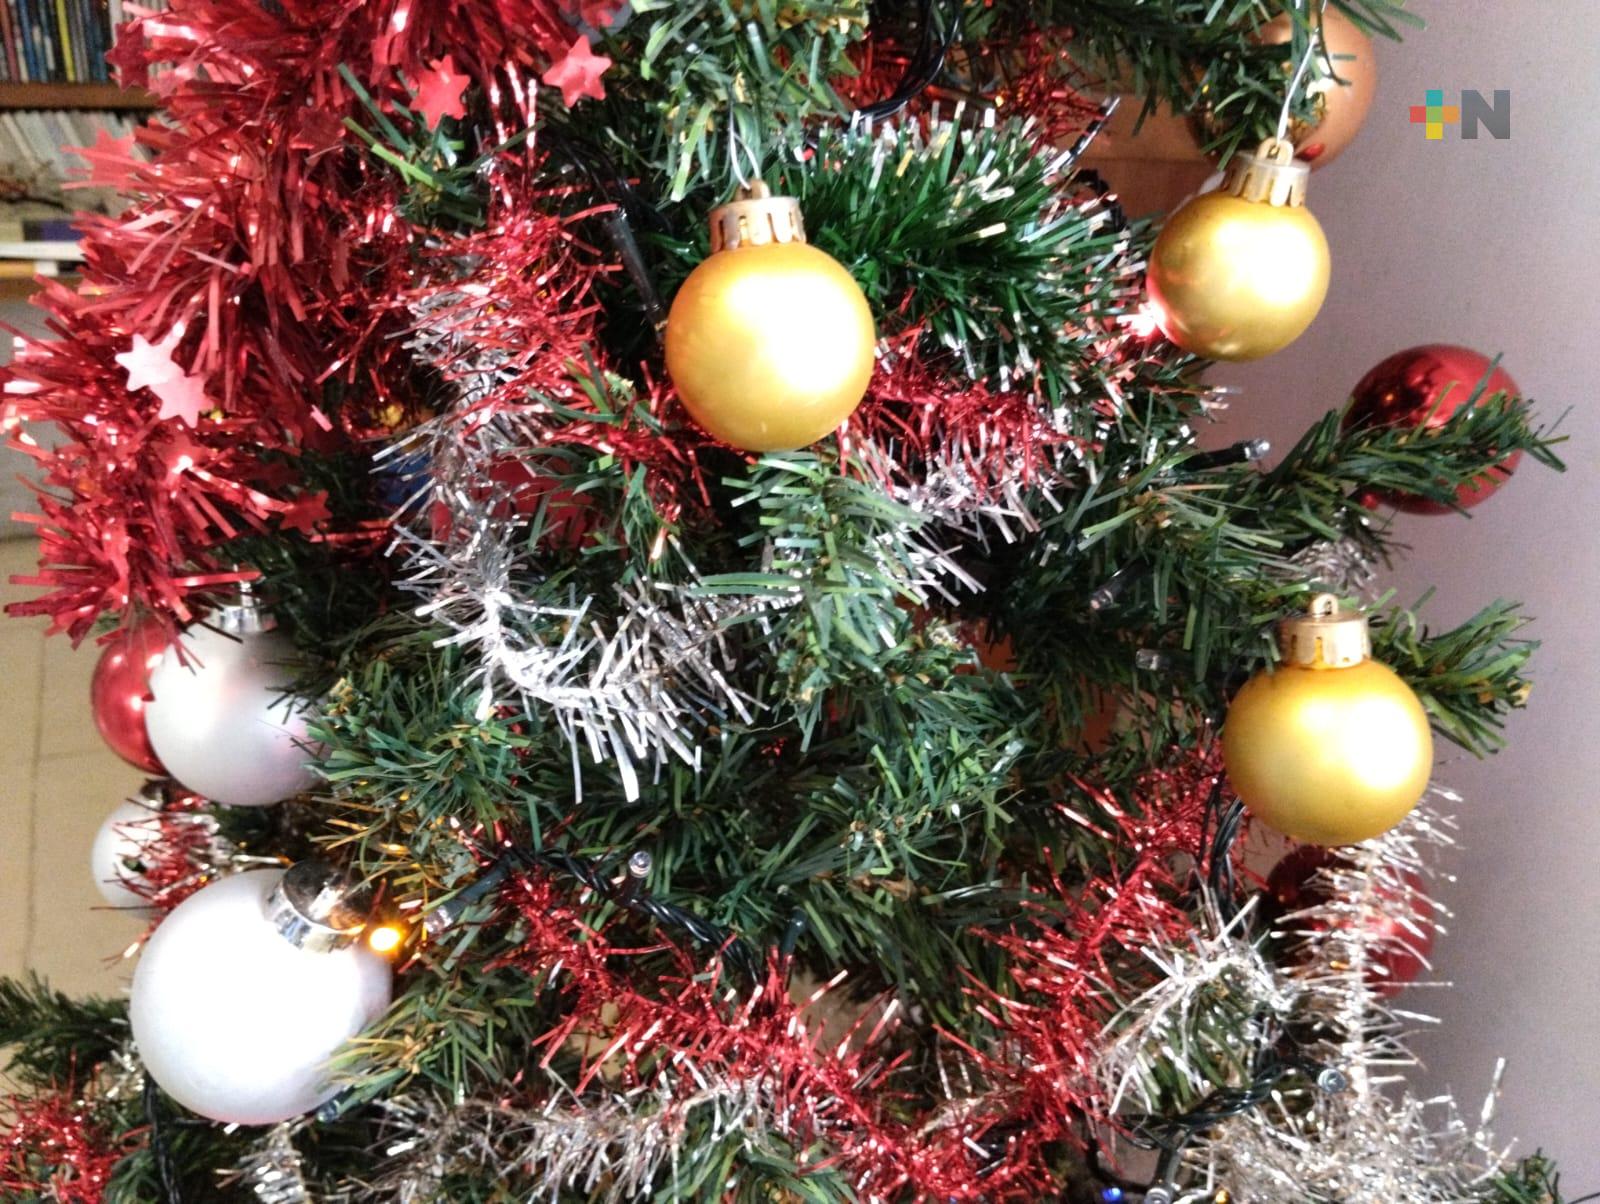 Reciclan adornos para adornar árboles de Navidad